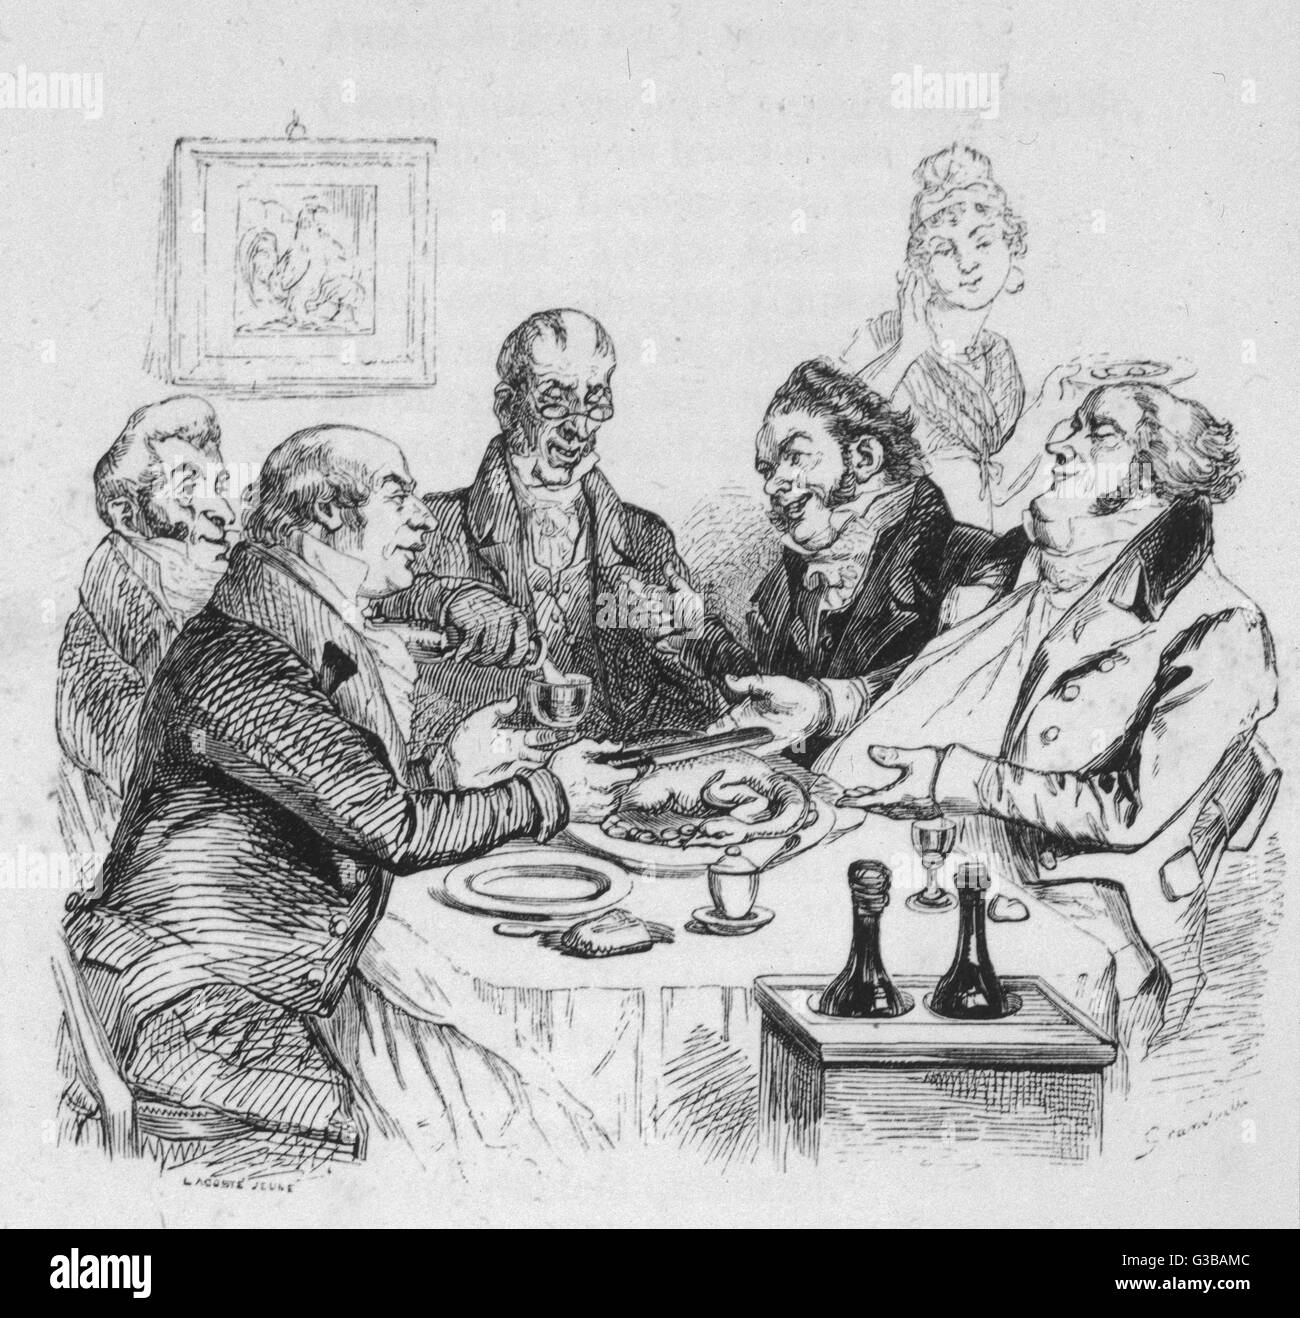 MEN DINE ON CAPONS 1840 Stock Photo